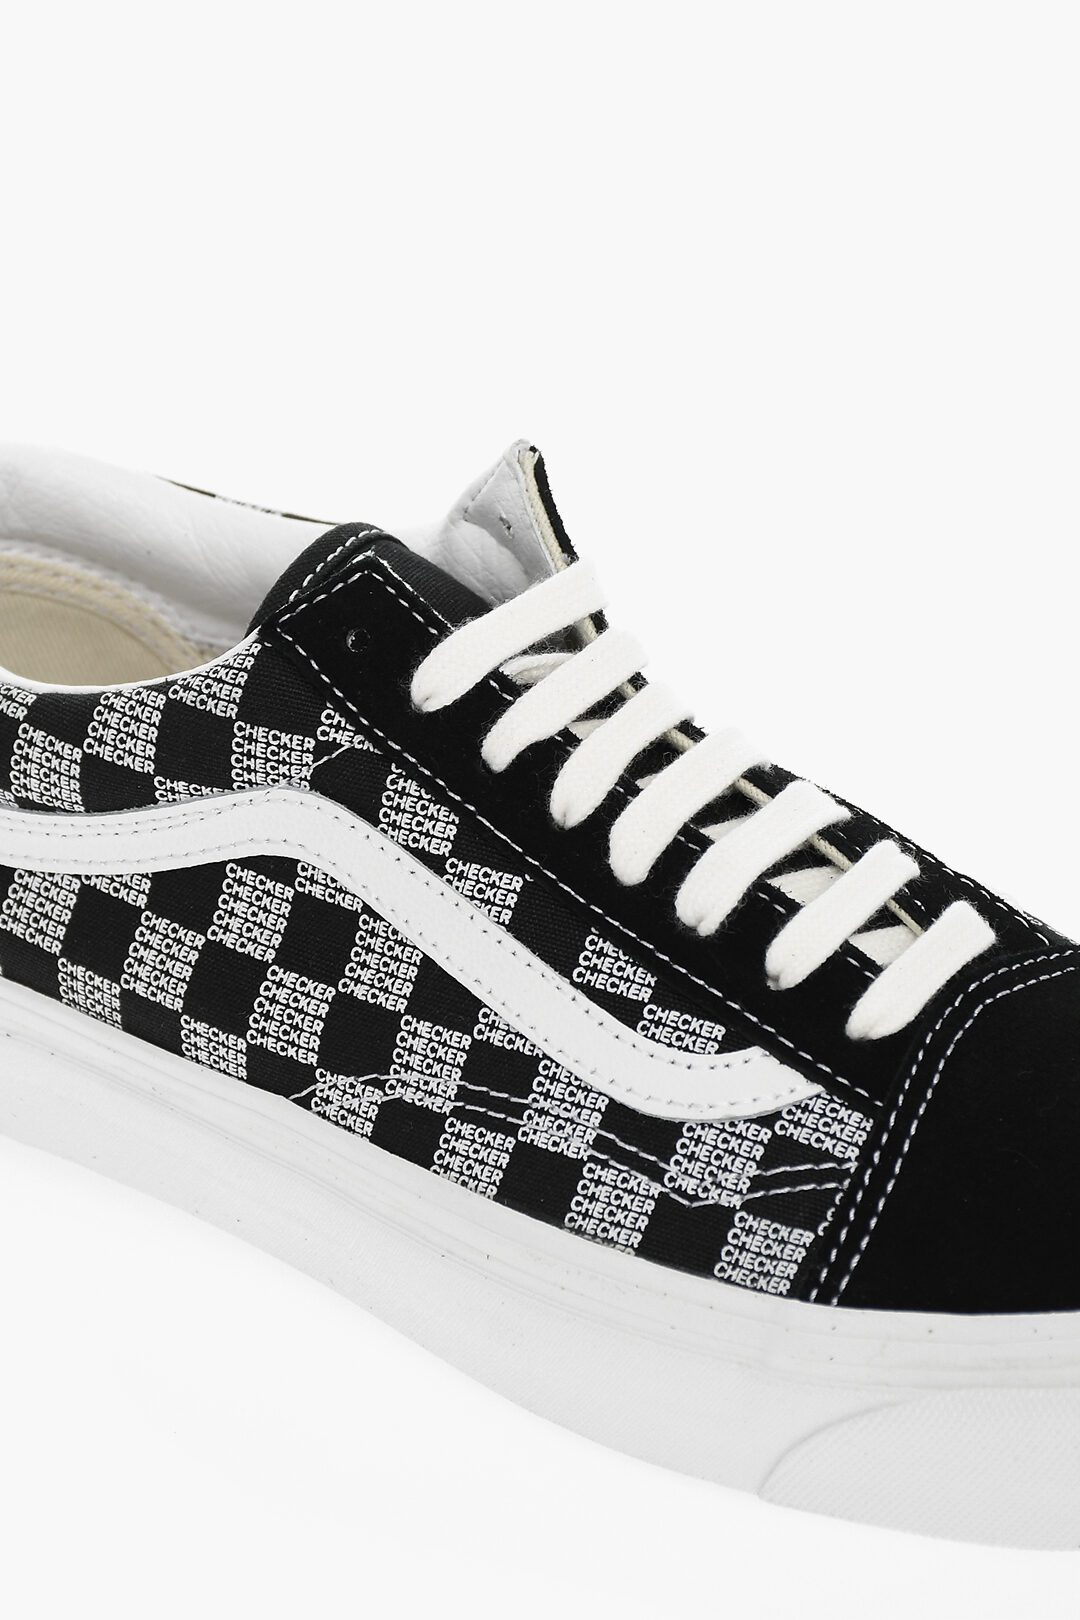 Vans Old Skool Checkerboard Sneakers in Black and White